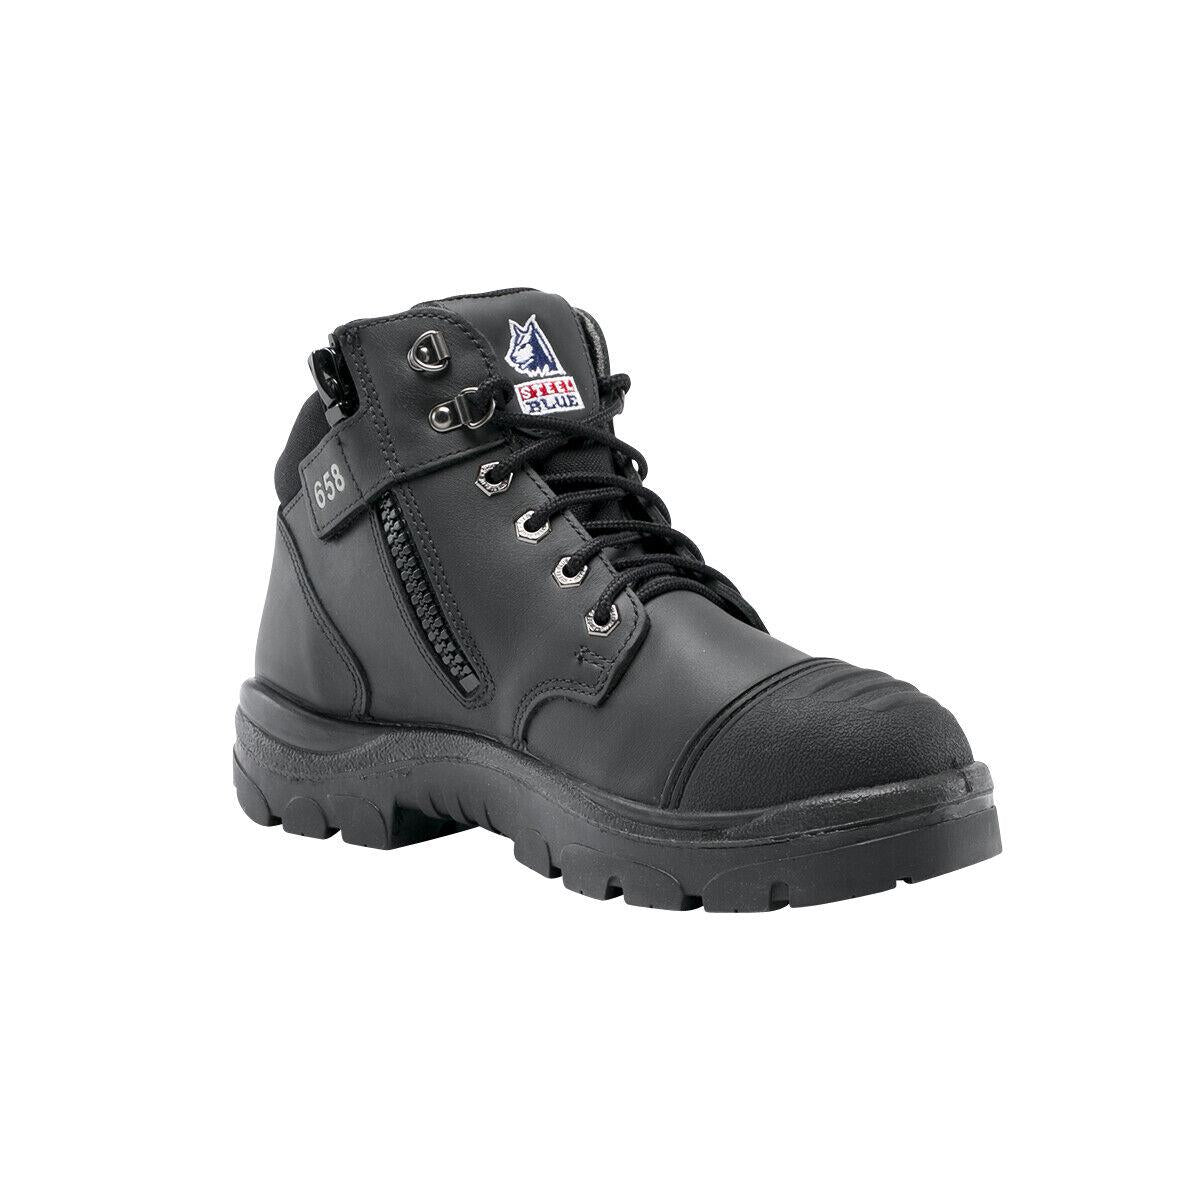 Steel Blue Parkes Bump zip S3 black steel toe/midsole safety work boot #392658